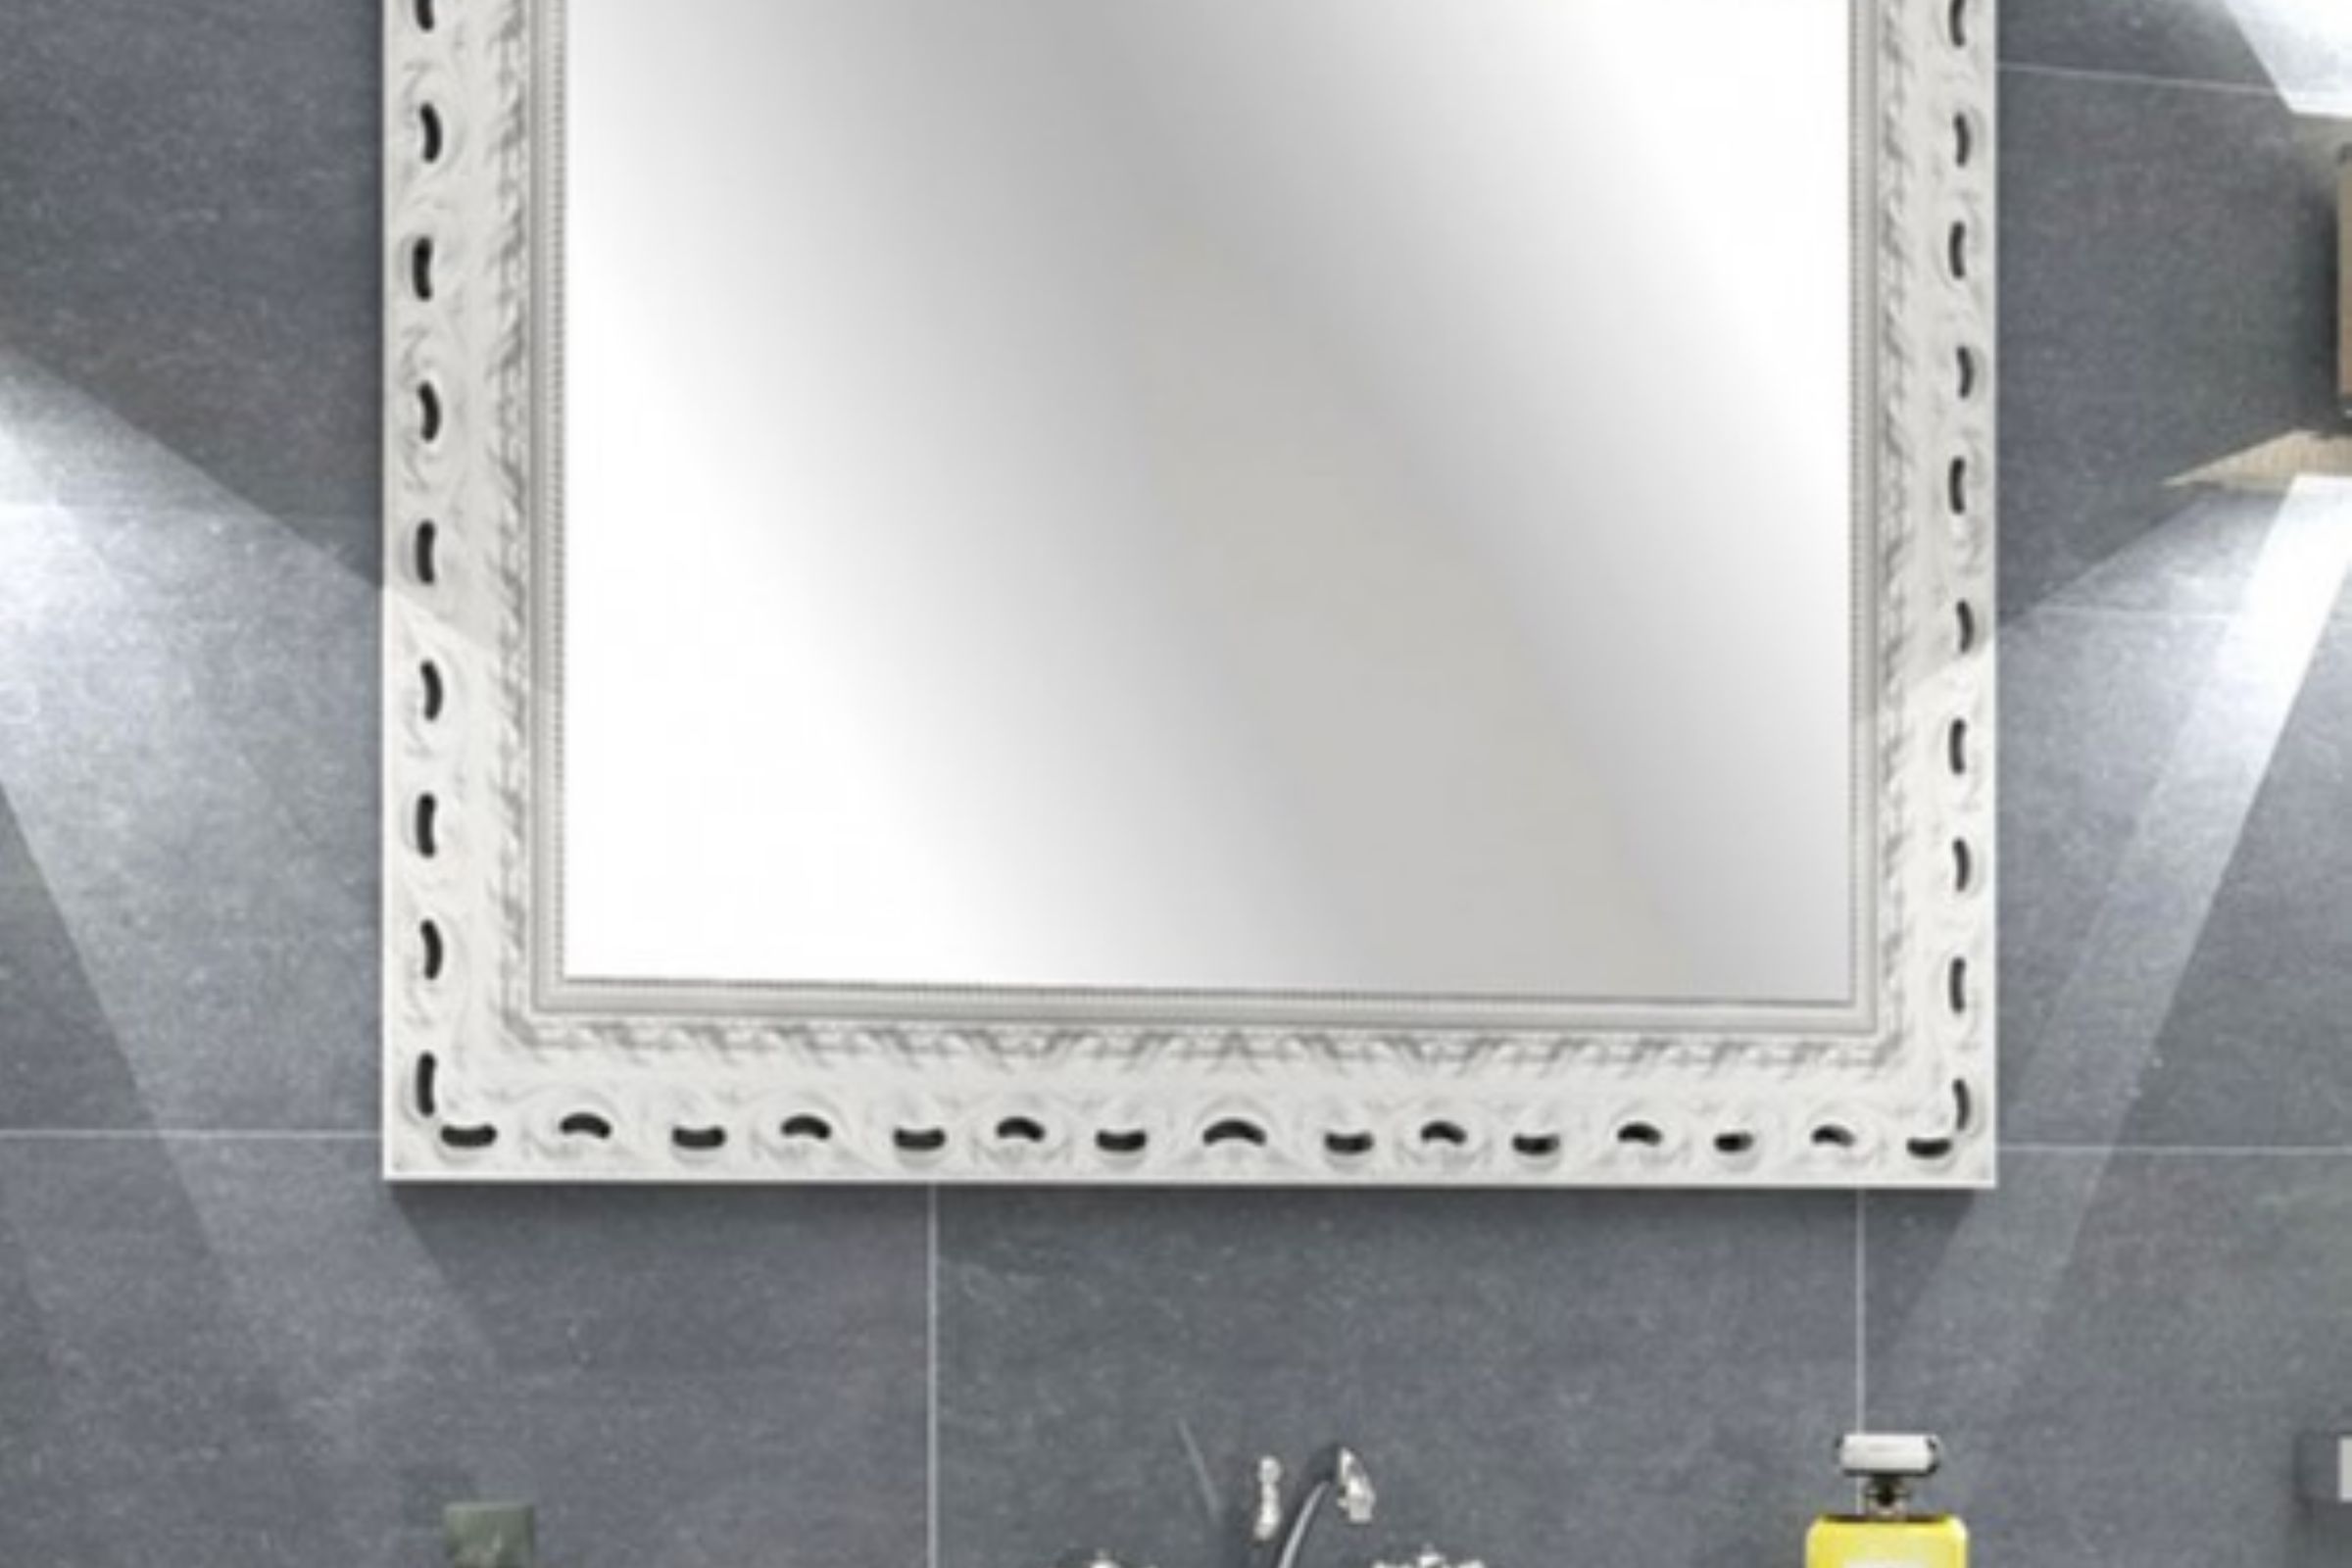 specchio con cornice legno intarsiato